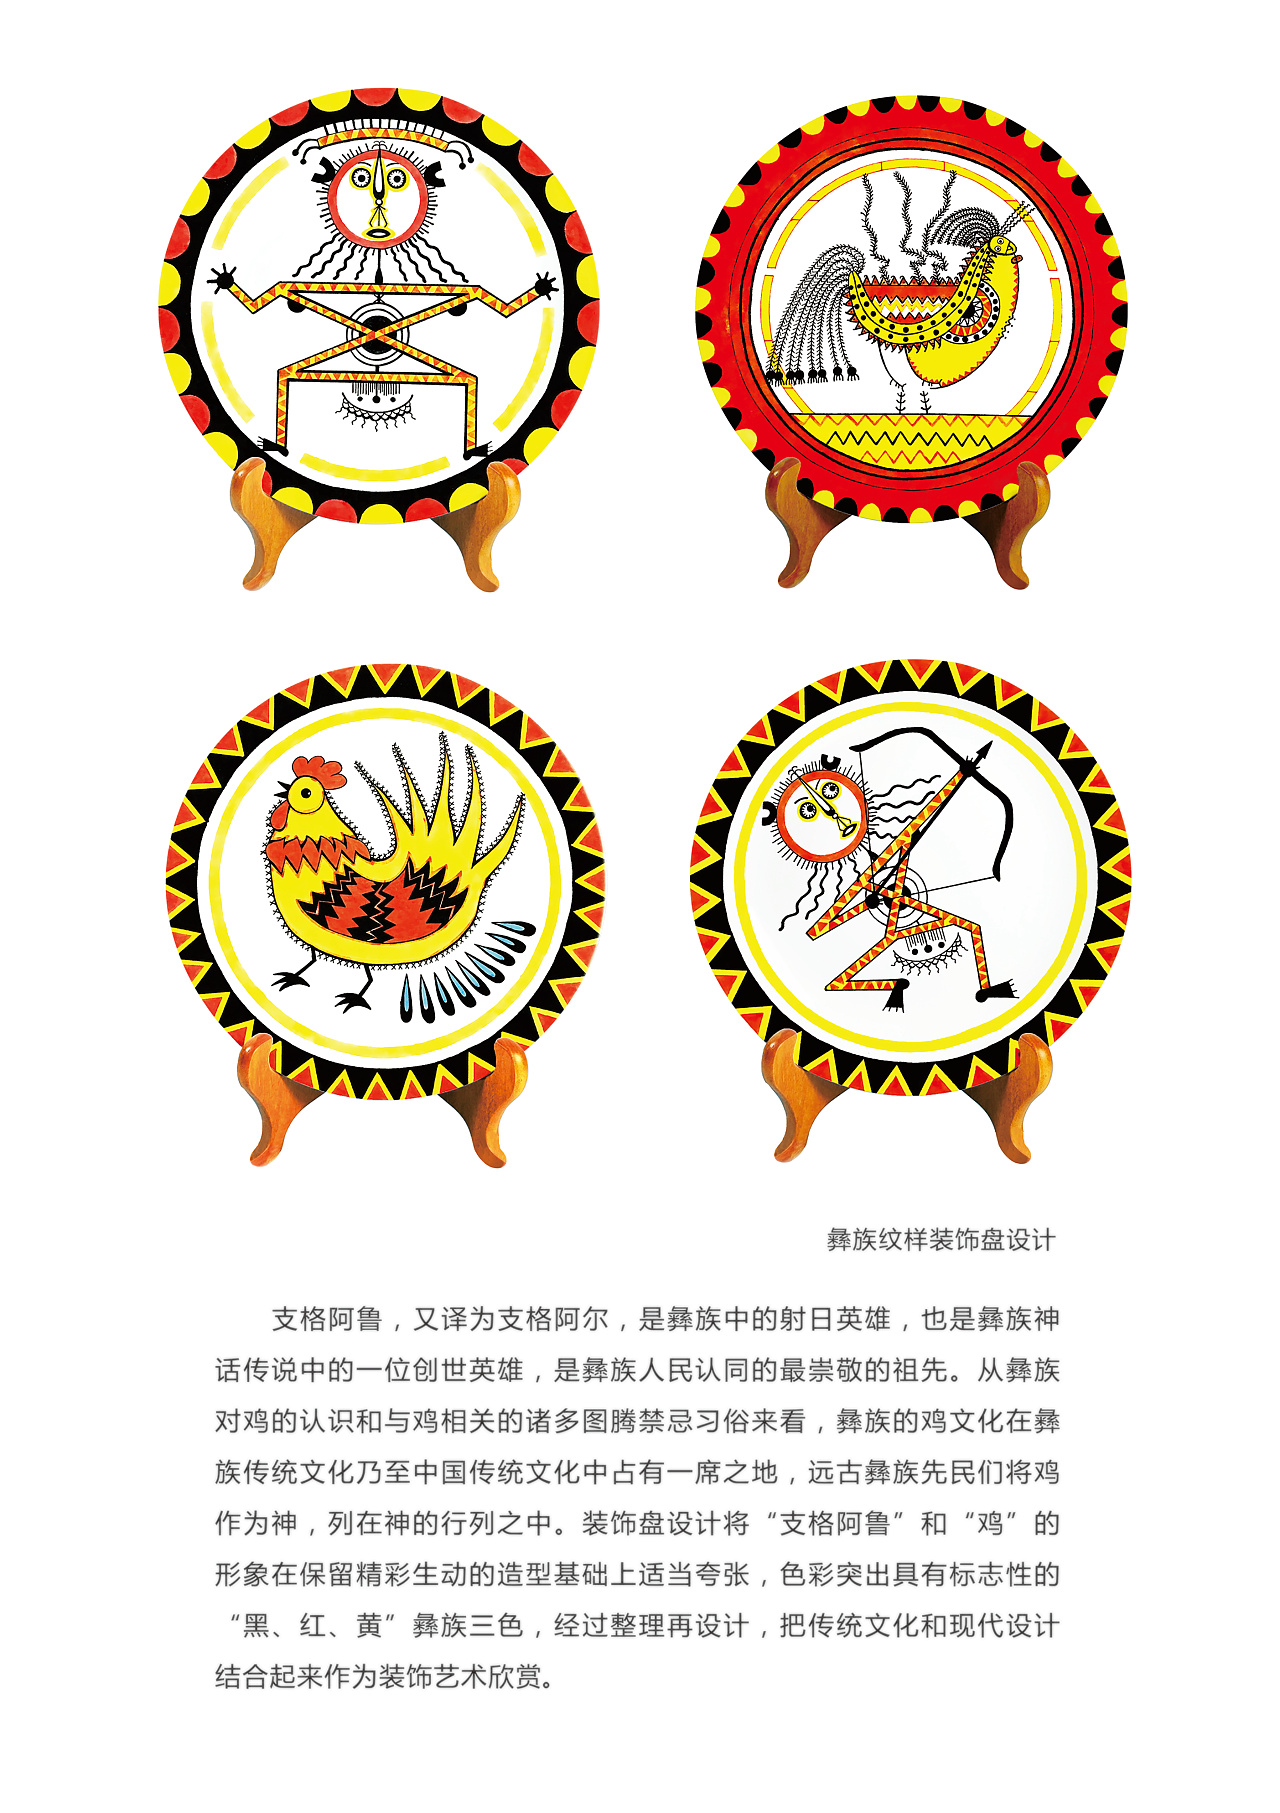 代表彝族象征的图案图片